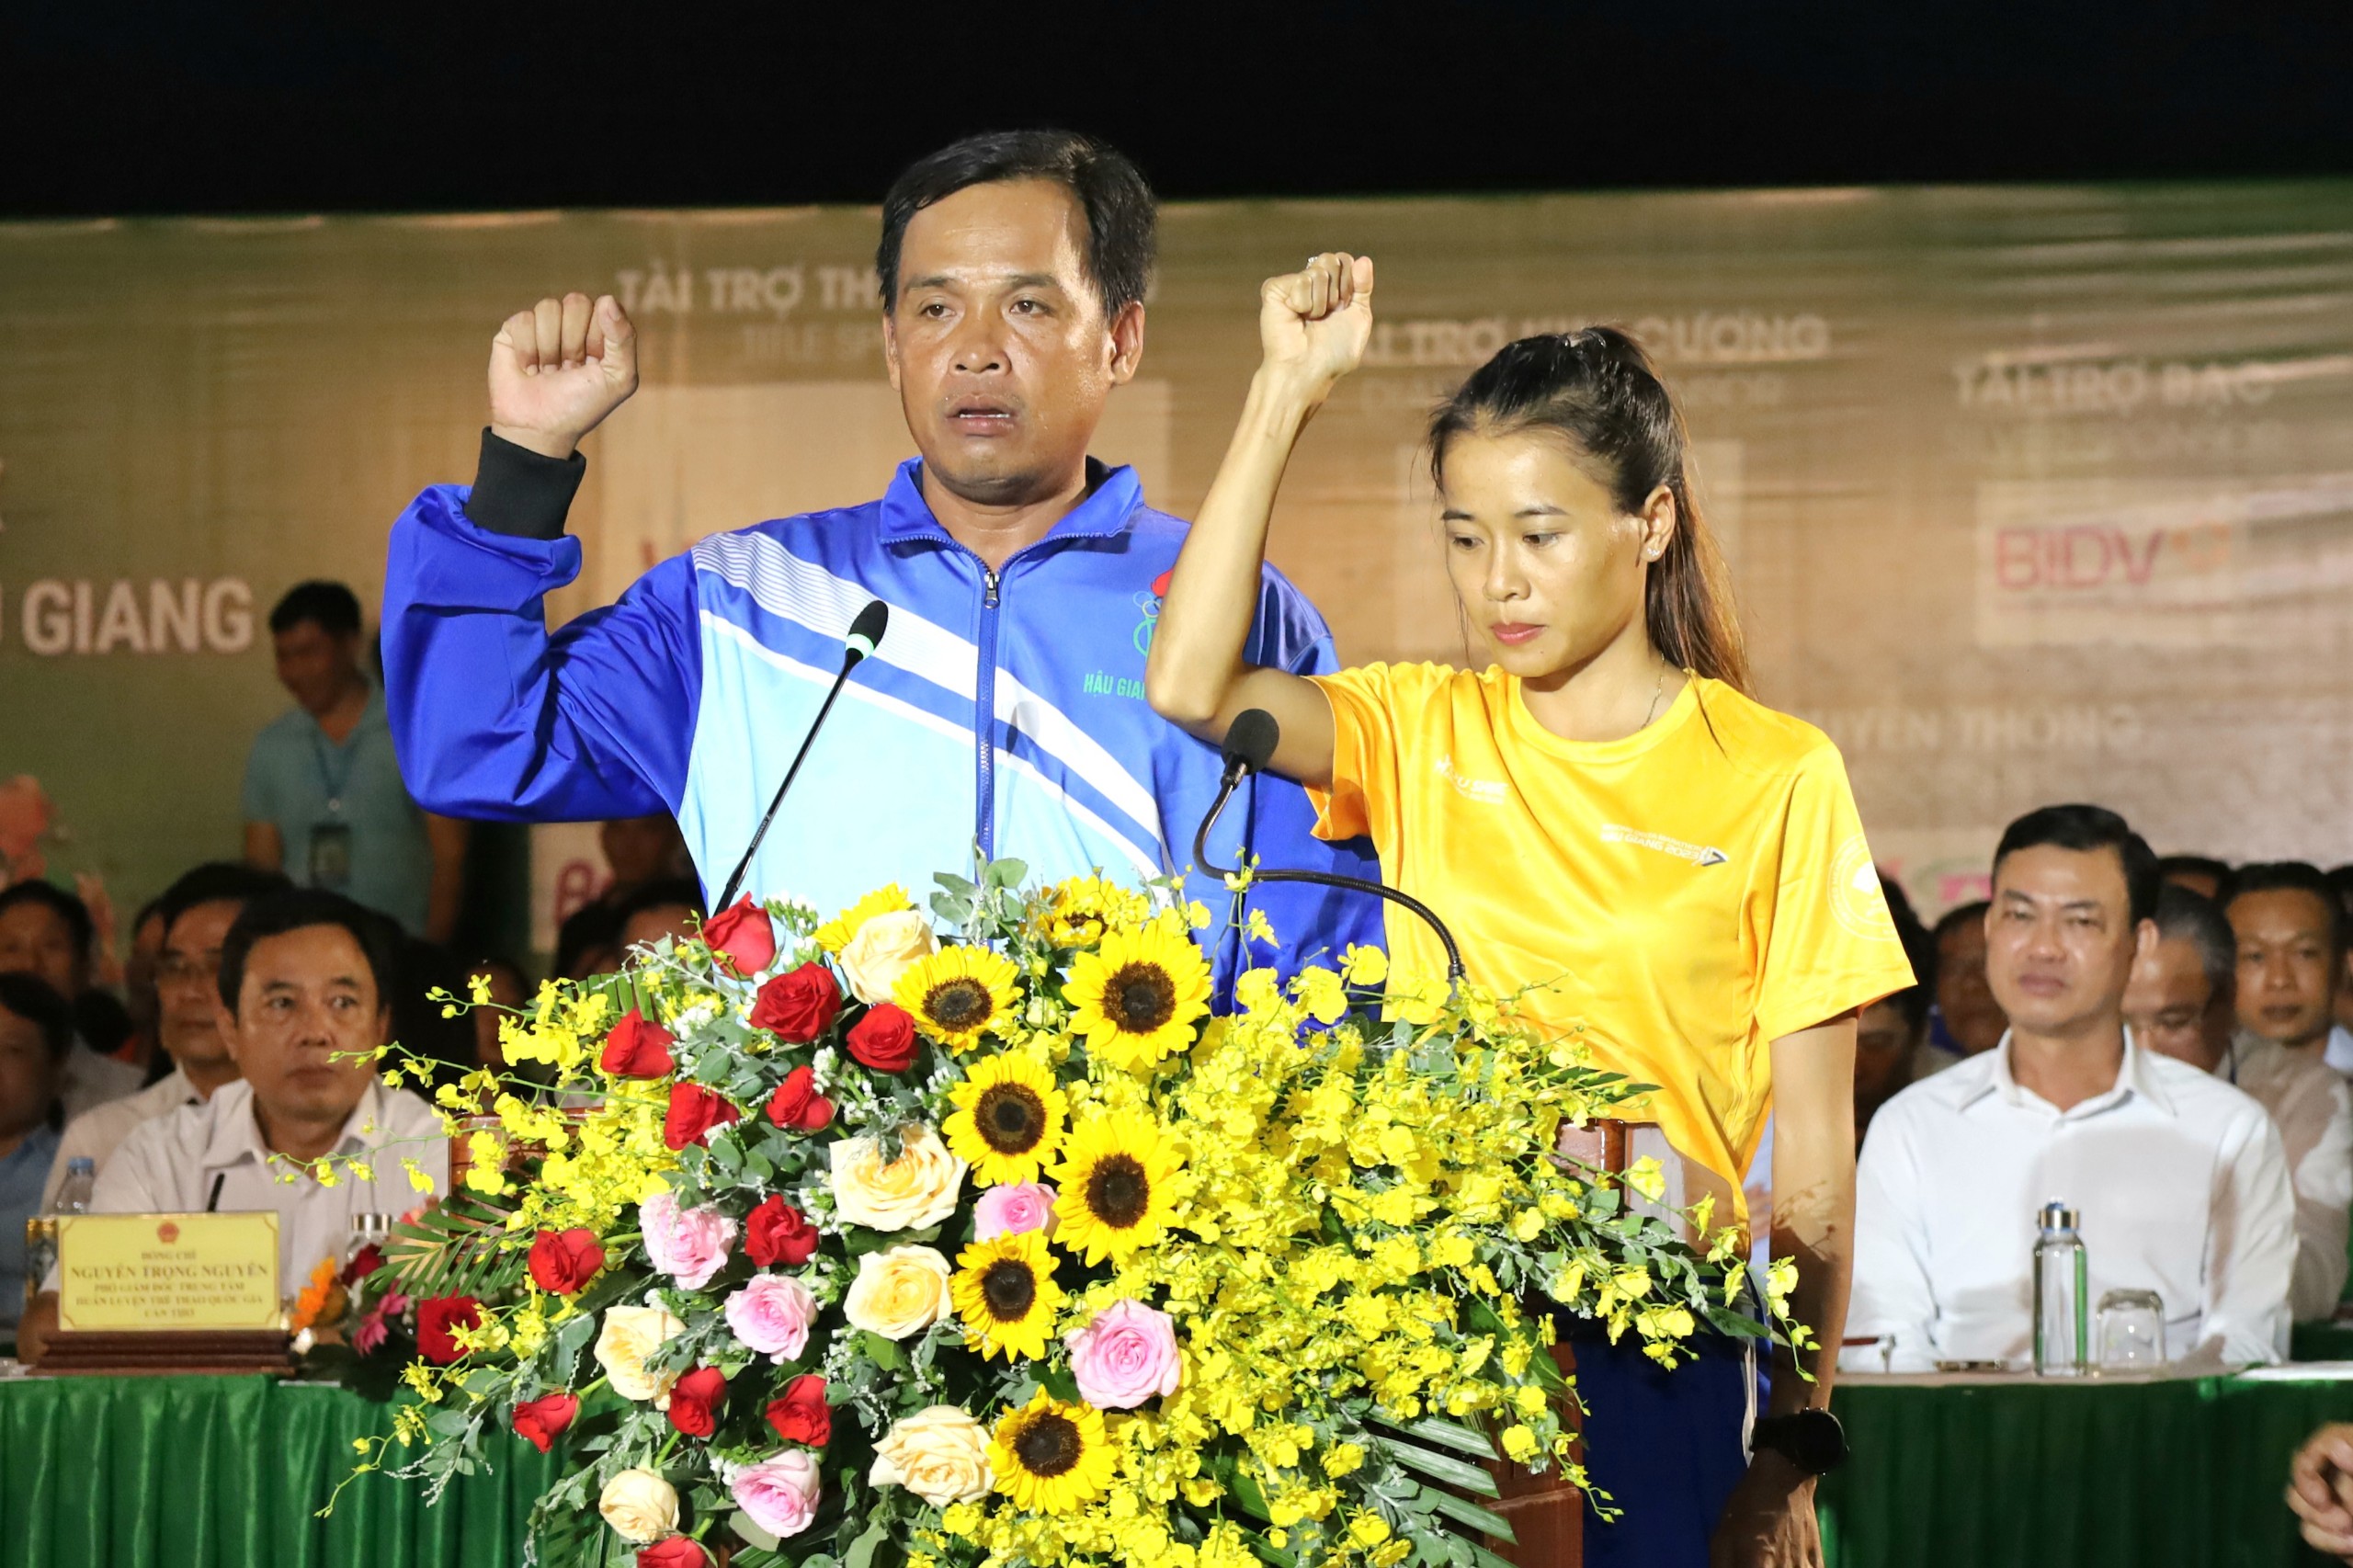 Đại diện vận động viên tham dự Đại hội Thể thao đồng bằng sông Cửu Long lần thứ IX và Giải Marathon quốc tế “Vietcombank Mekong Delta” Hậu Giang phát biểu hạ quyết tâm.